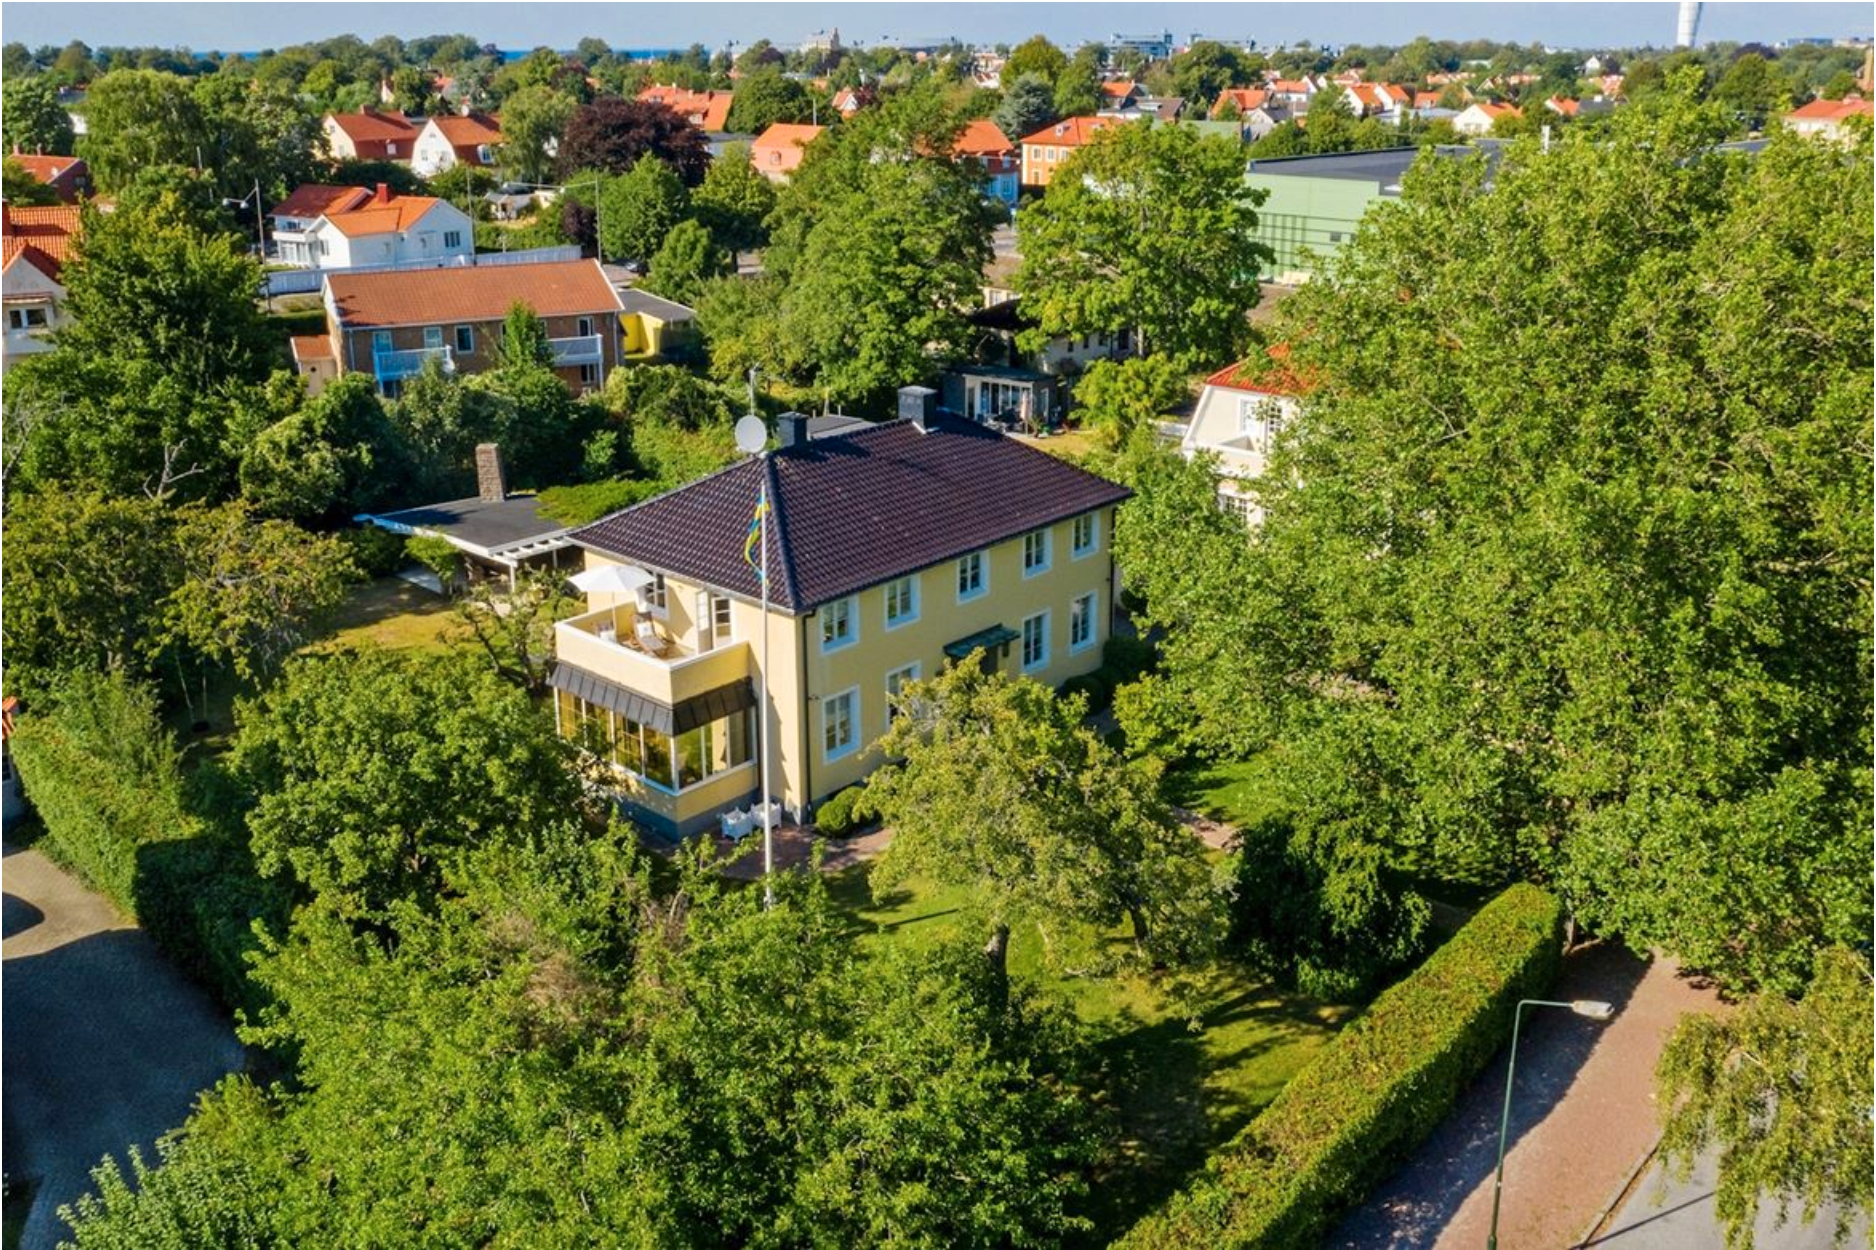 30-talsvillan toppar klicktoppen på Hemnet i Malmö vecka 36.